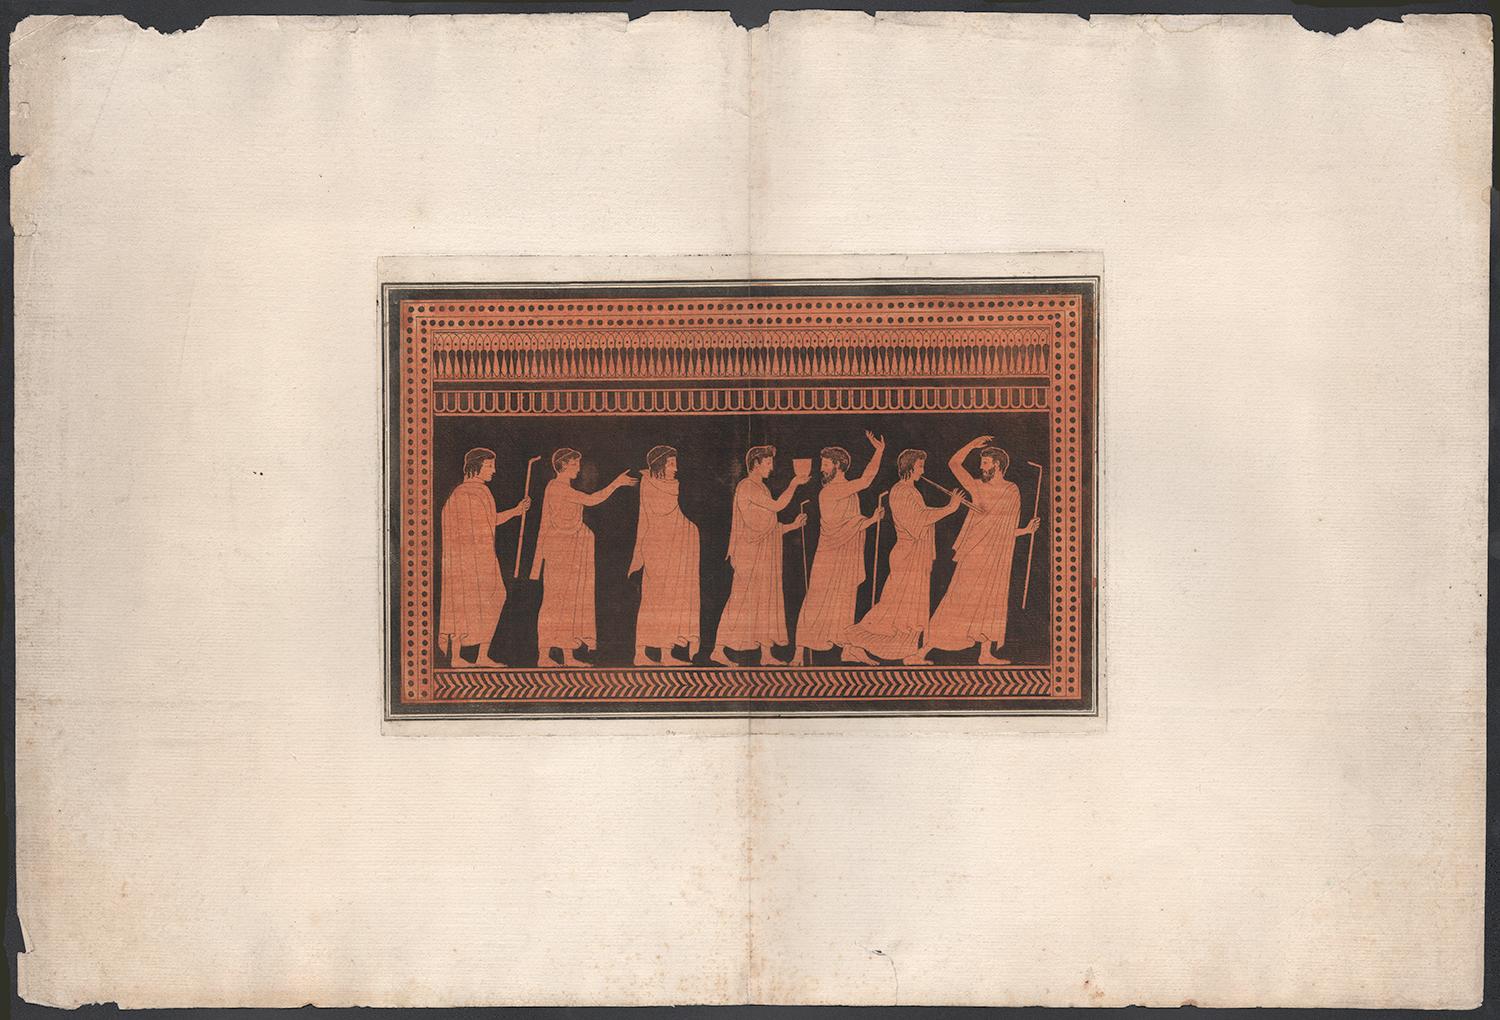 William Hamilton - Vase-peinture gravure grecque classique sur toile - Print de Pierre Francois Hugues D'Hancarville (author)